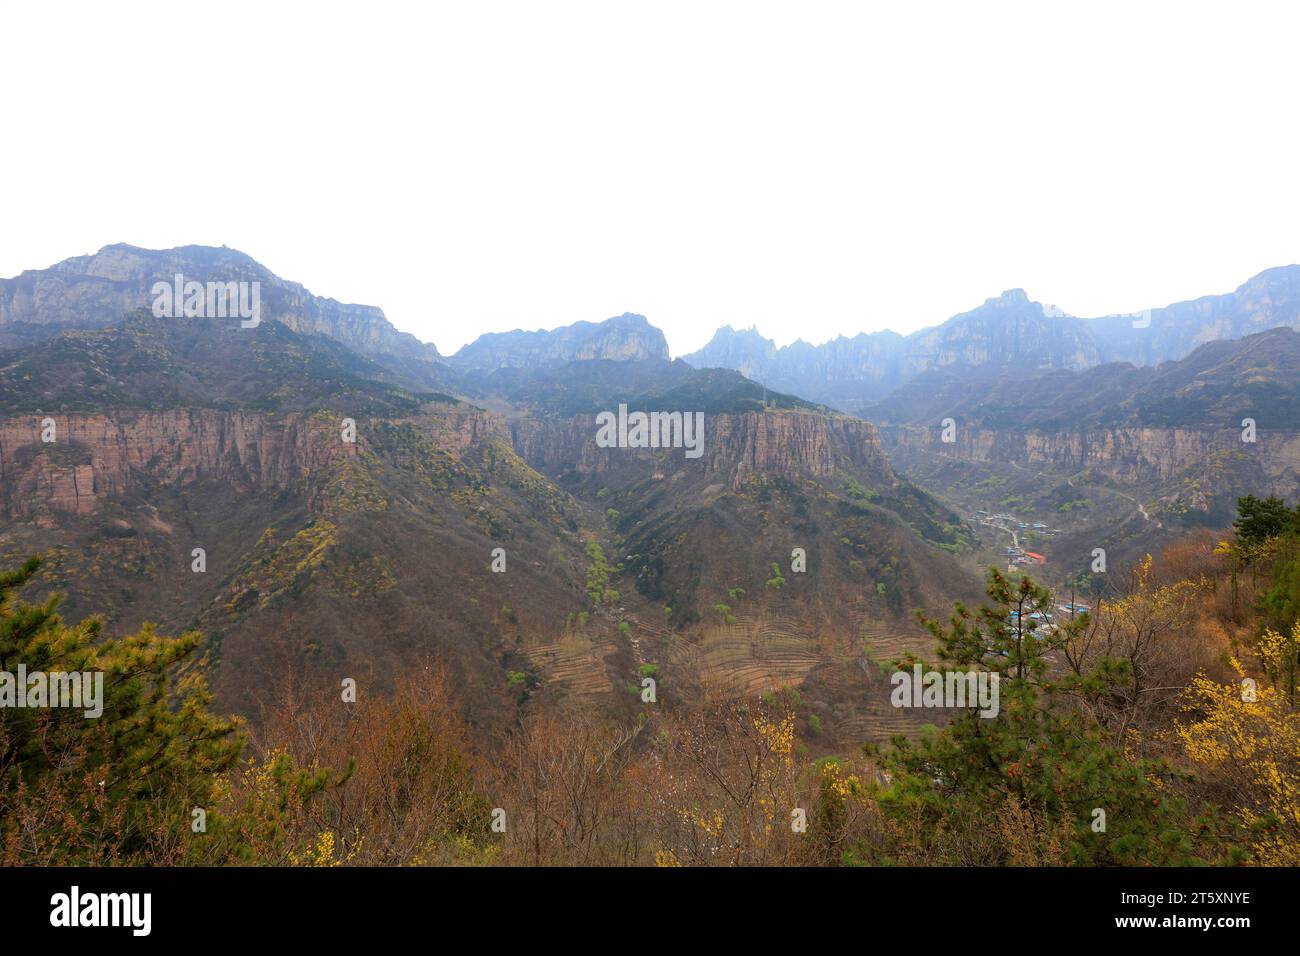 Wanxian mountains scenery, China Stock Photo